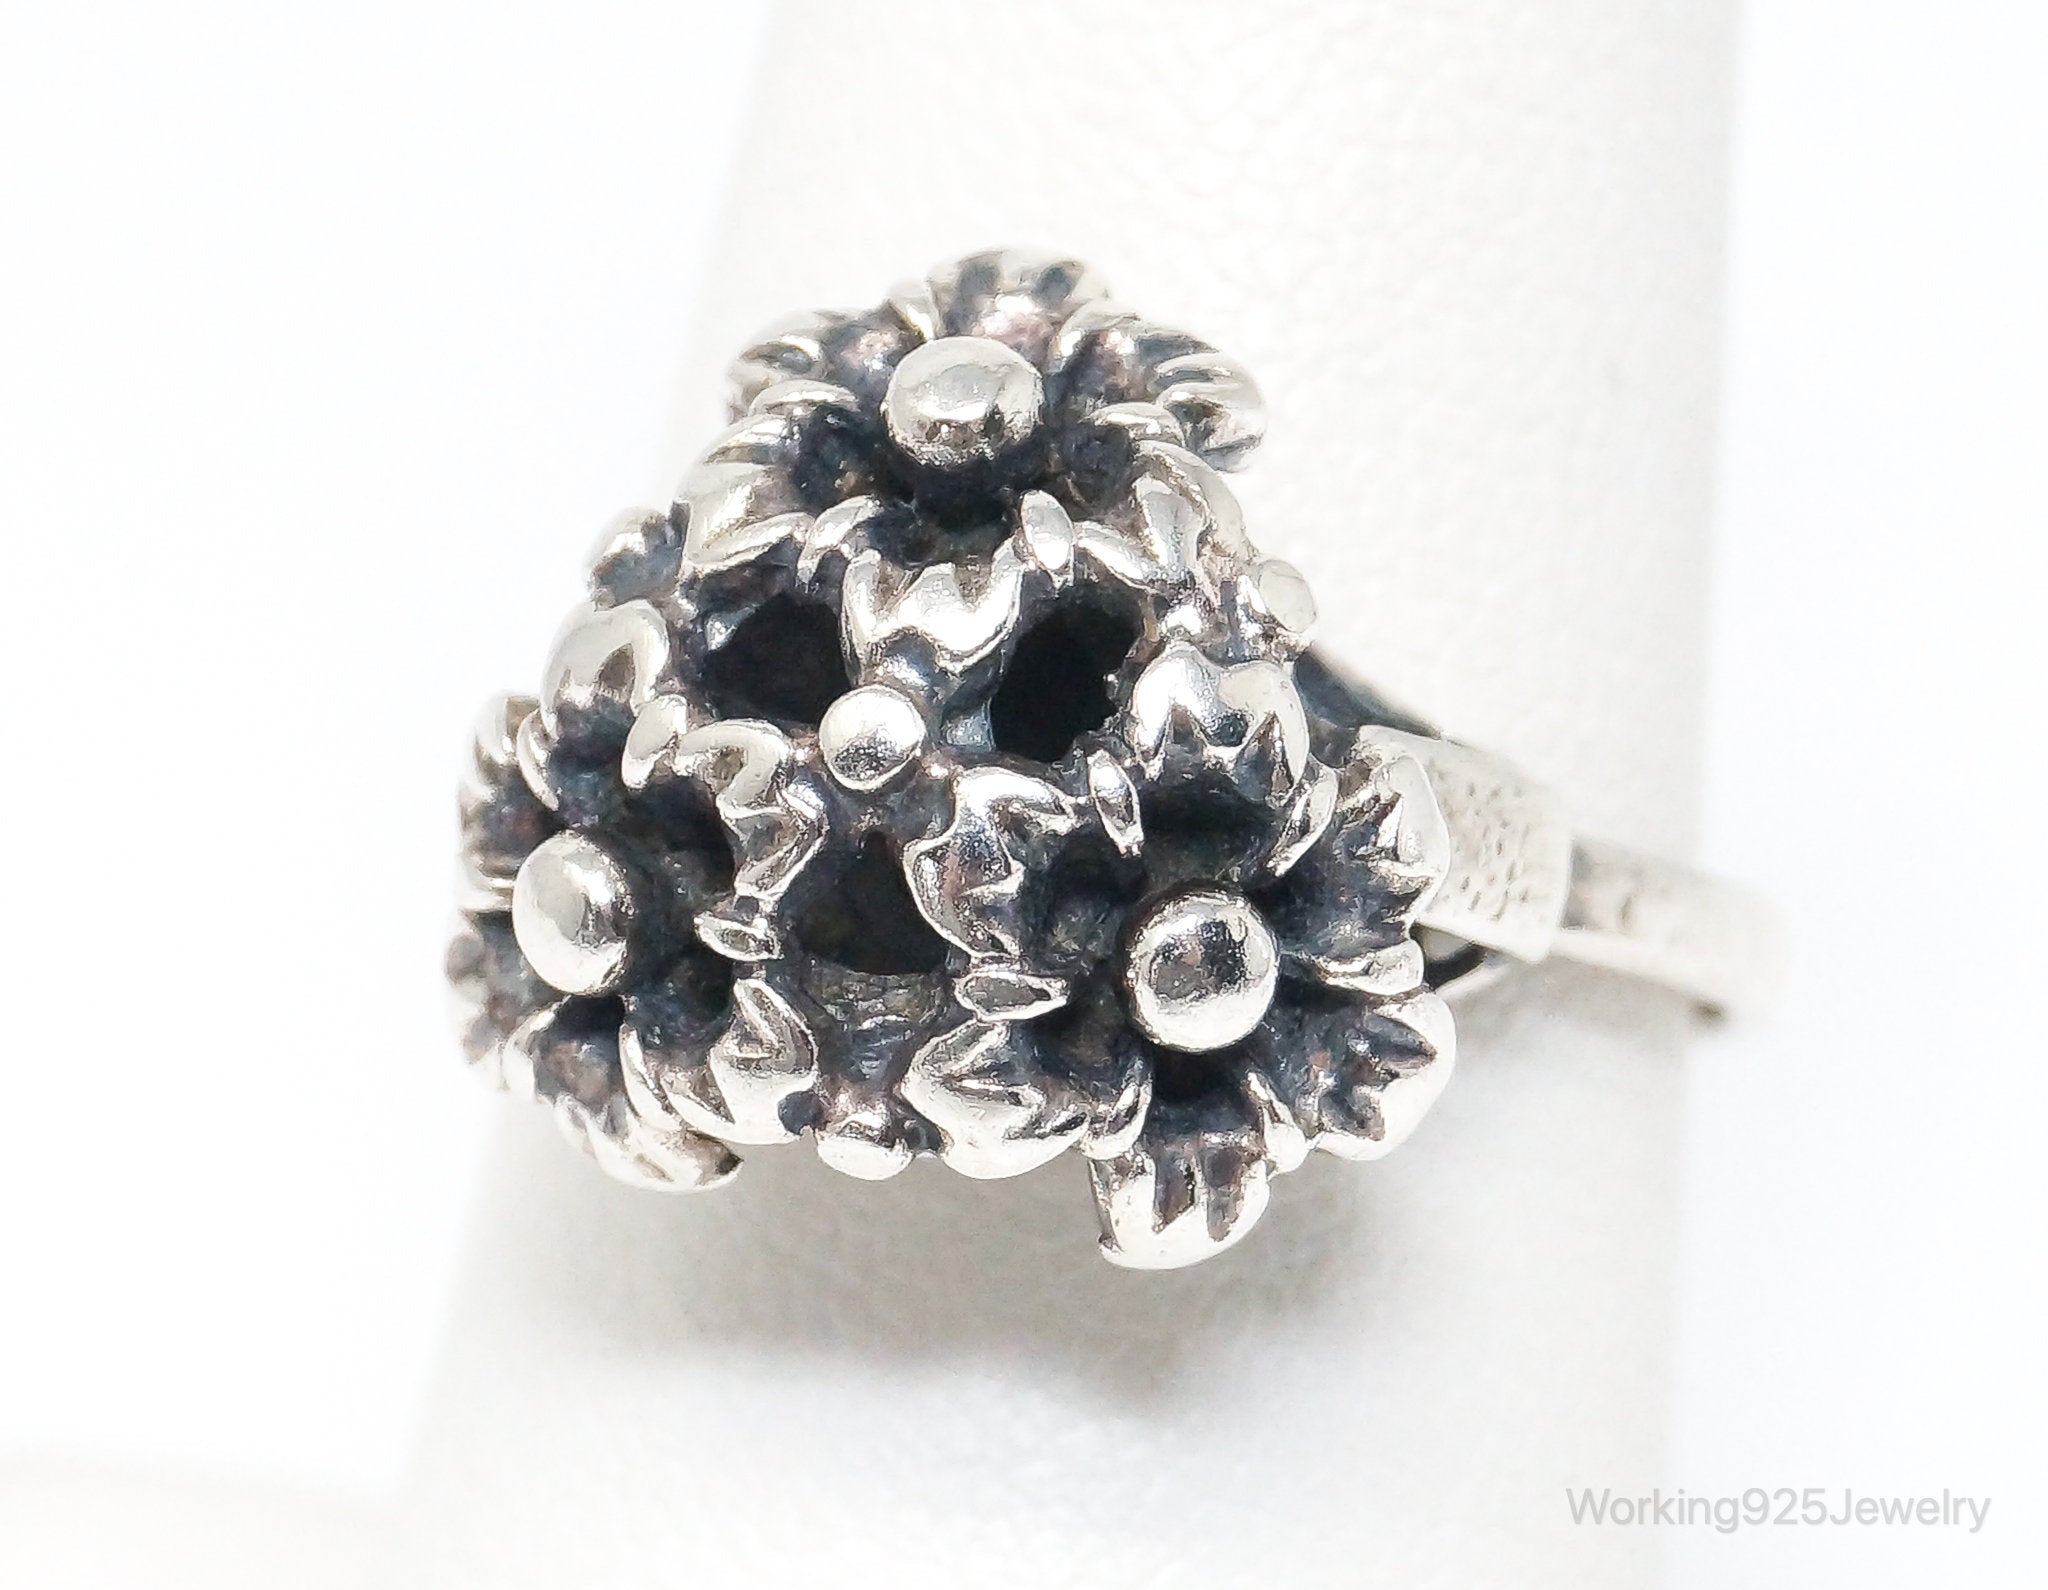 Antique Designer Floral Flowers Sterling Silver Ring - Size 7.75 Adjustable